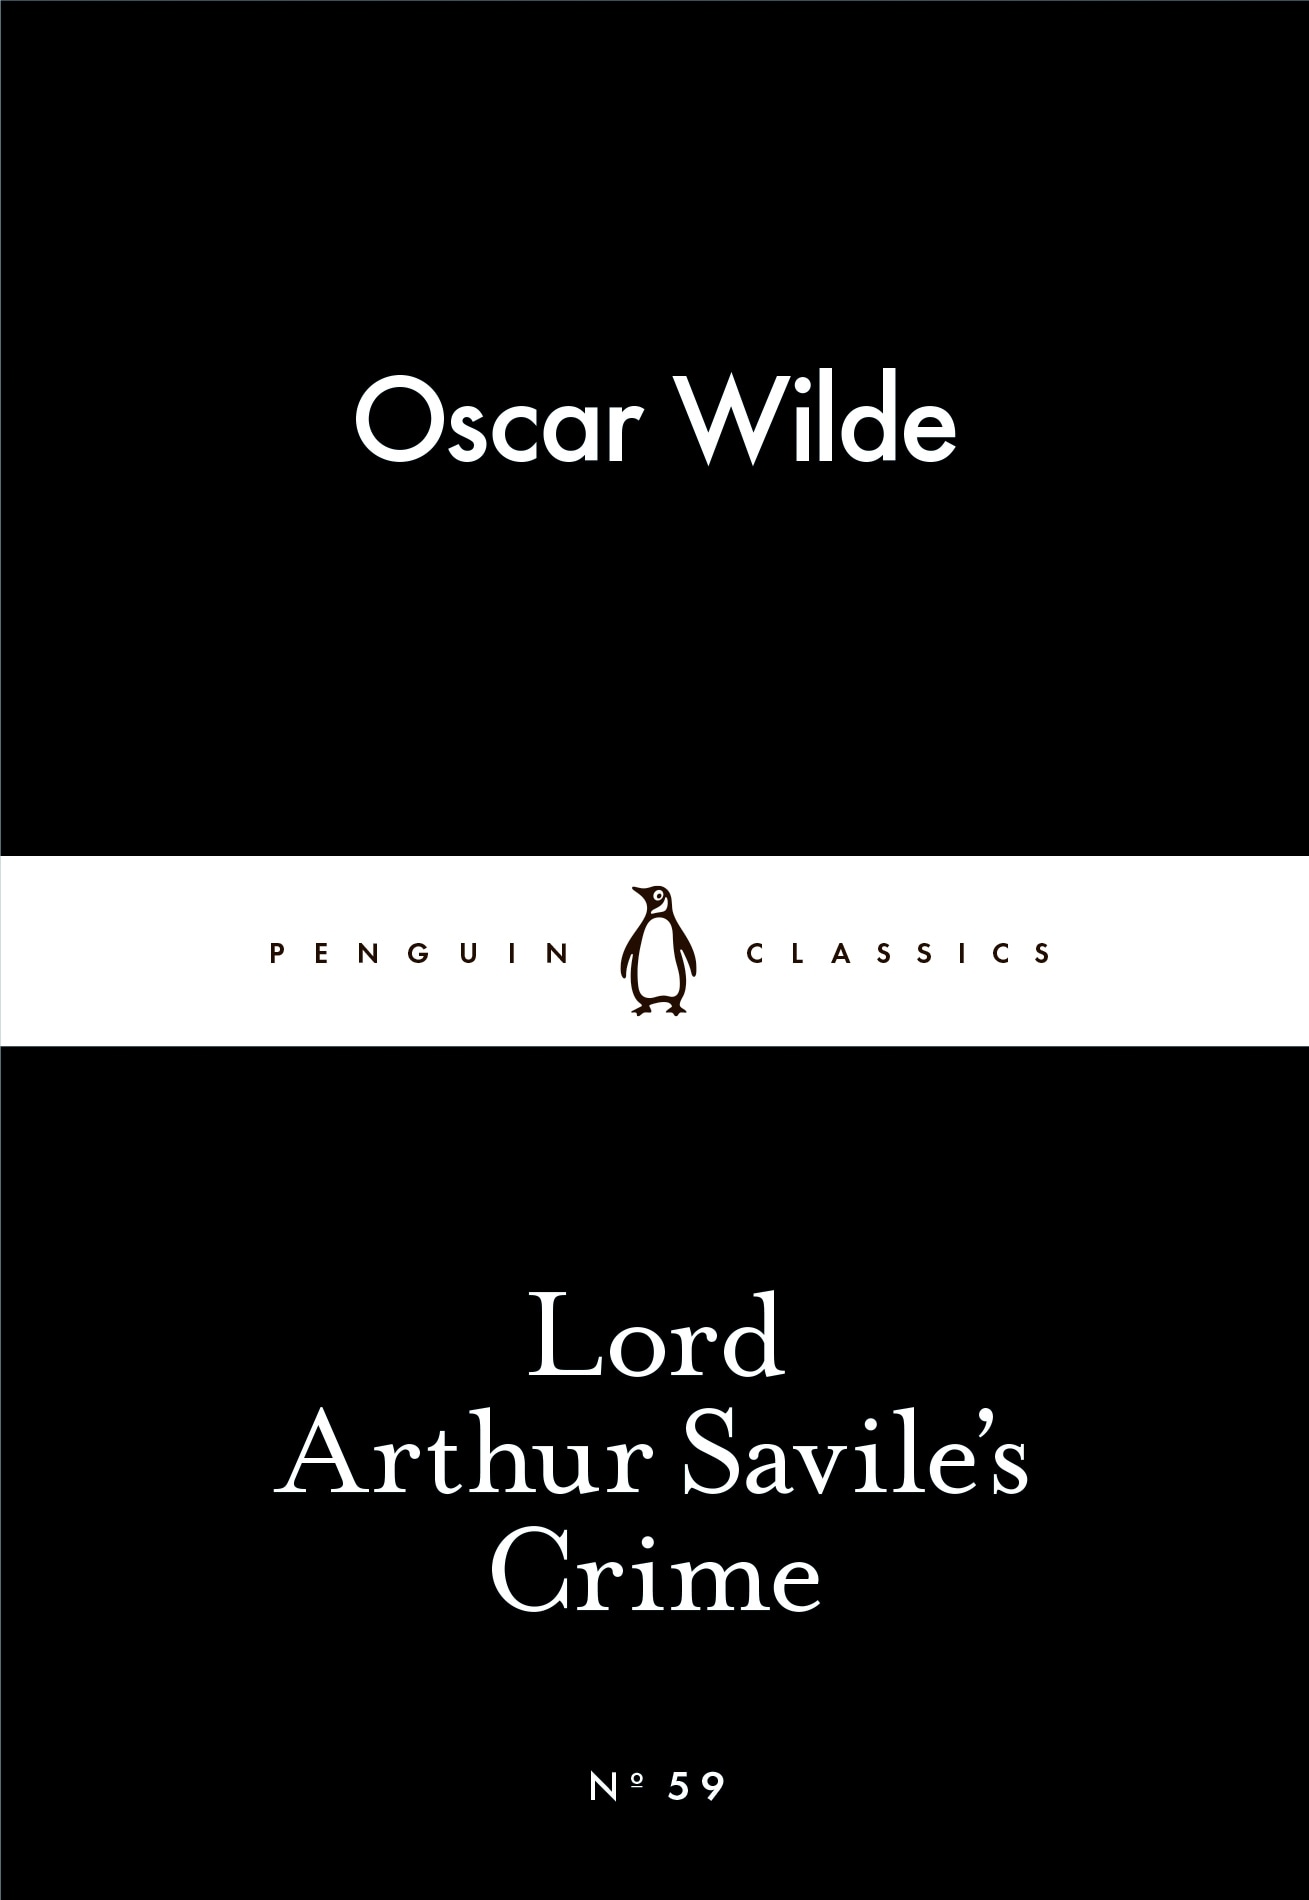 Book “Lord Arthur Savile's Crime” by Oscar Wilde — February 26, 2015